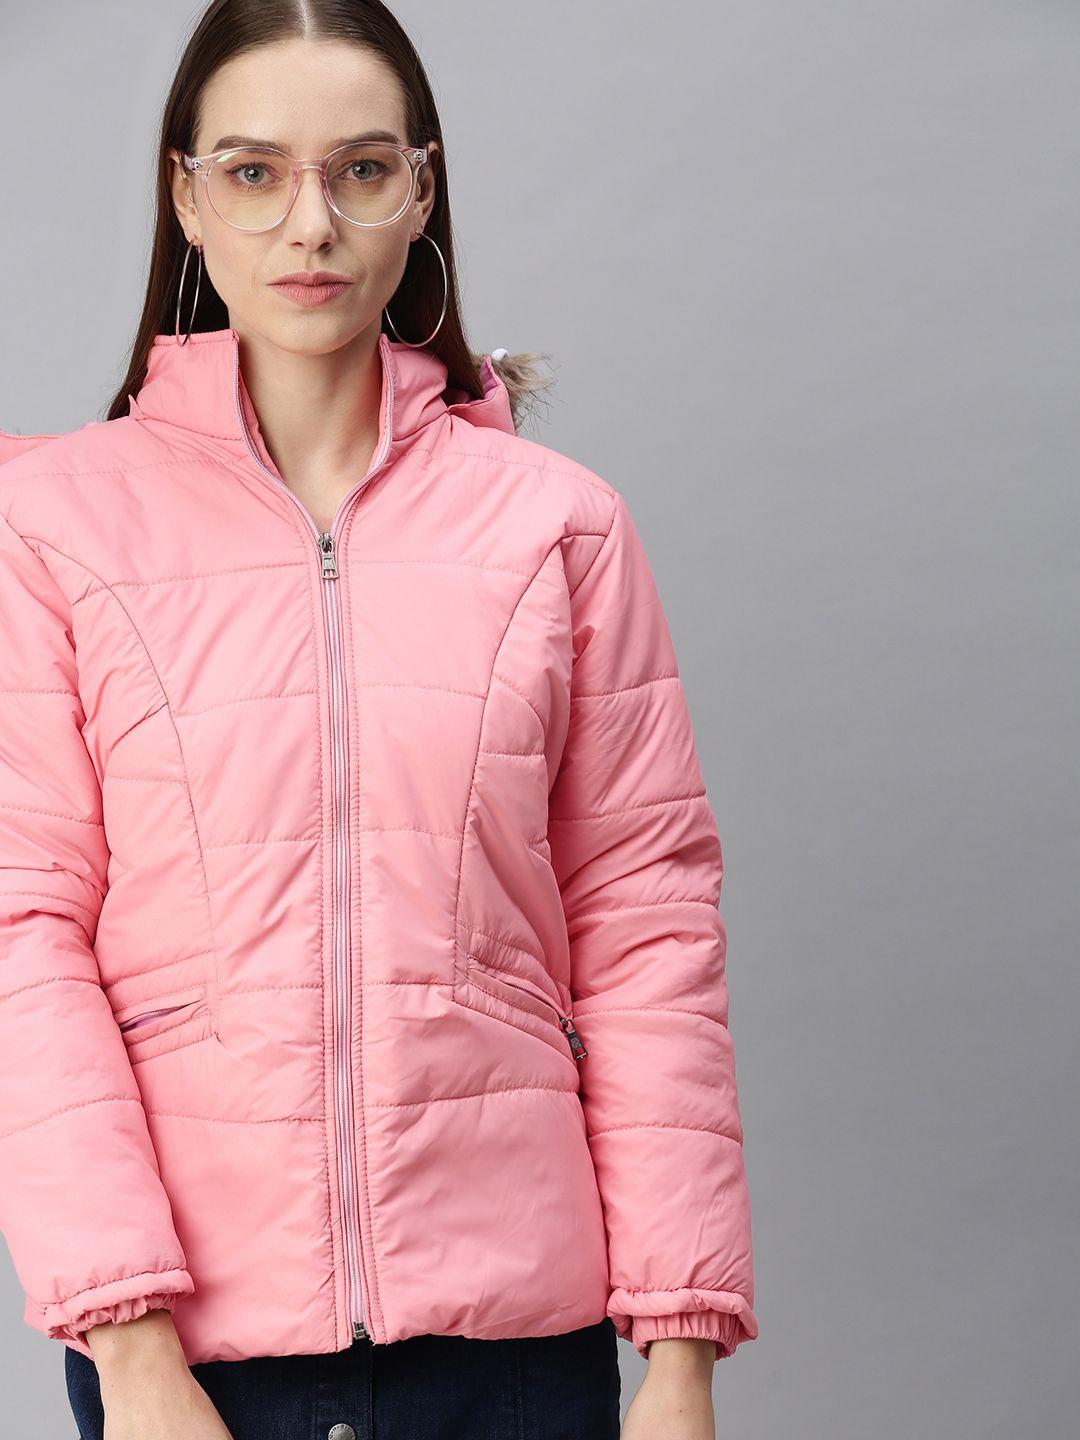 voxati women pink open front jacket